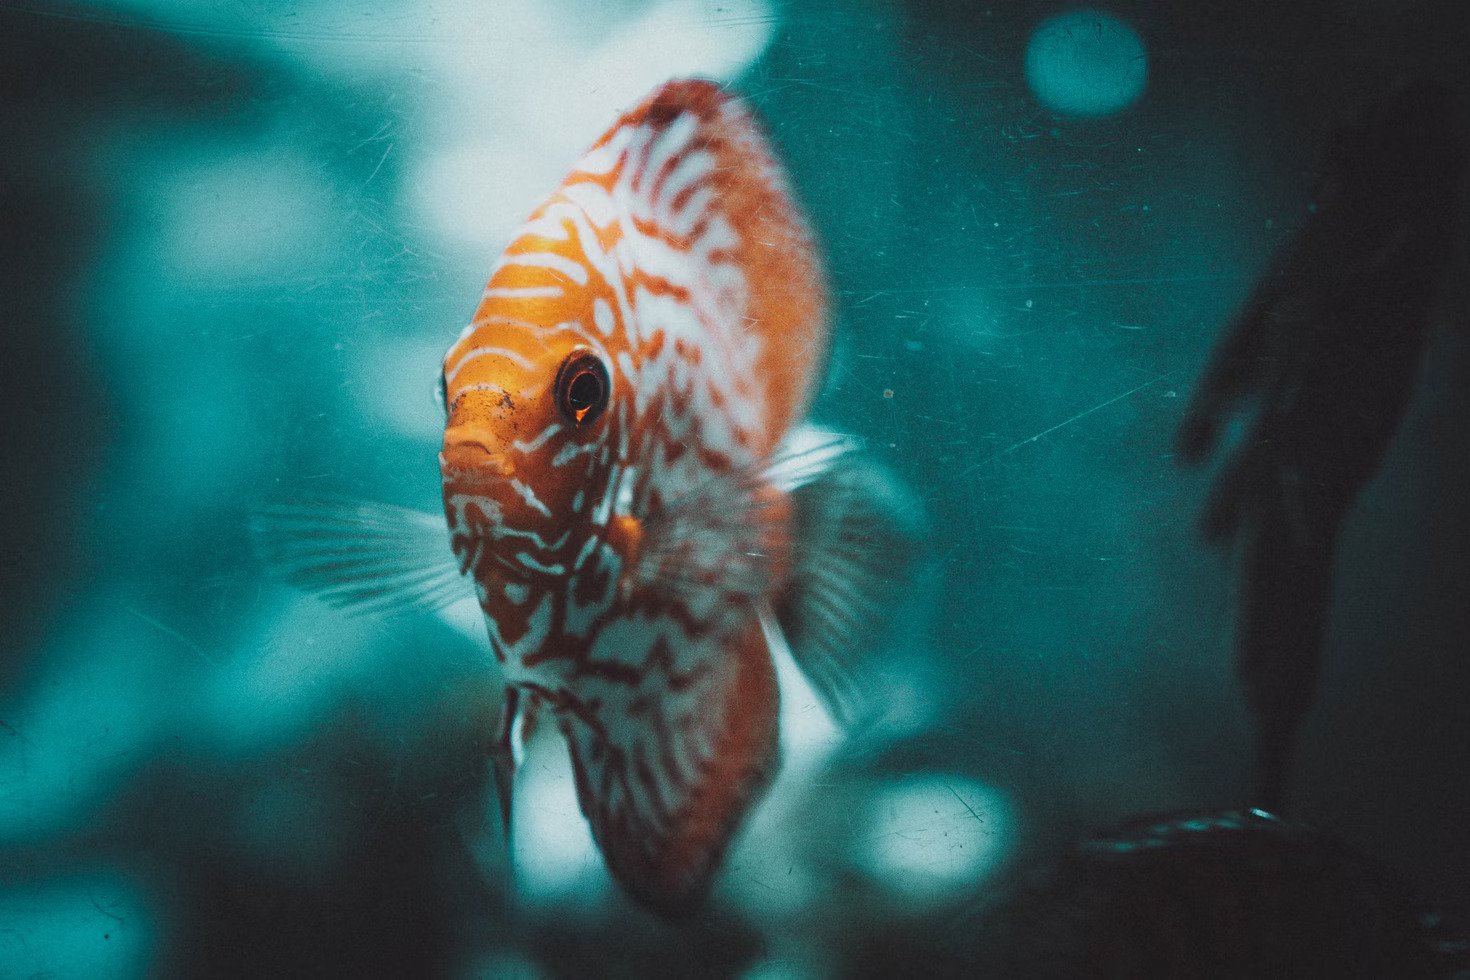 Dubai Aquarium and Underwater zoo